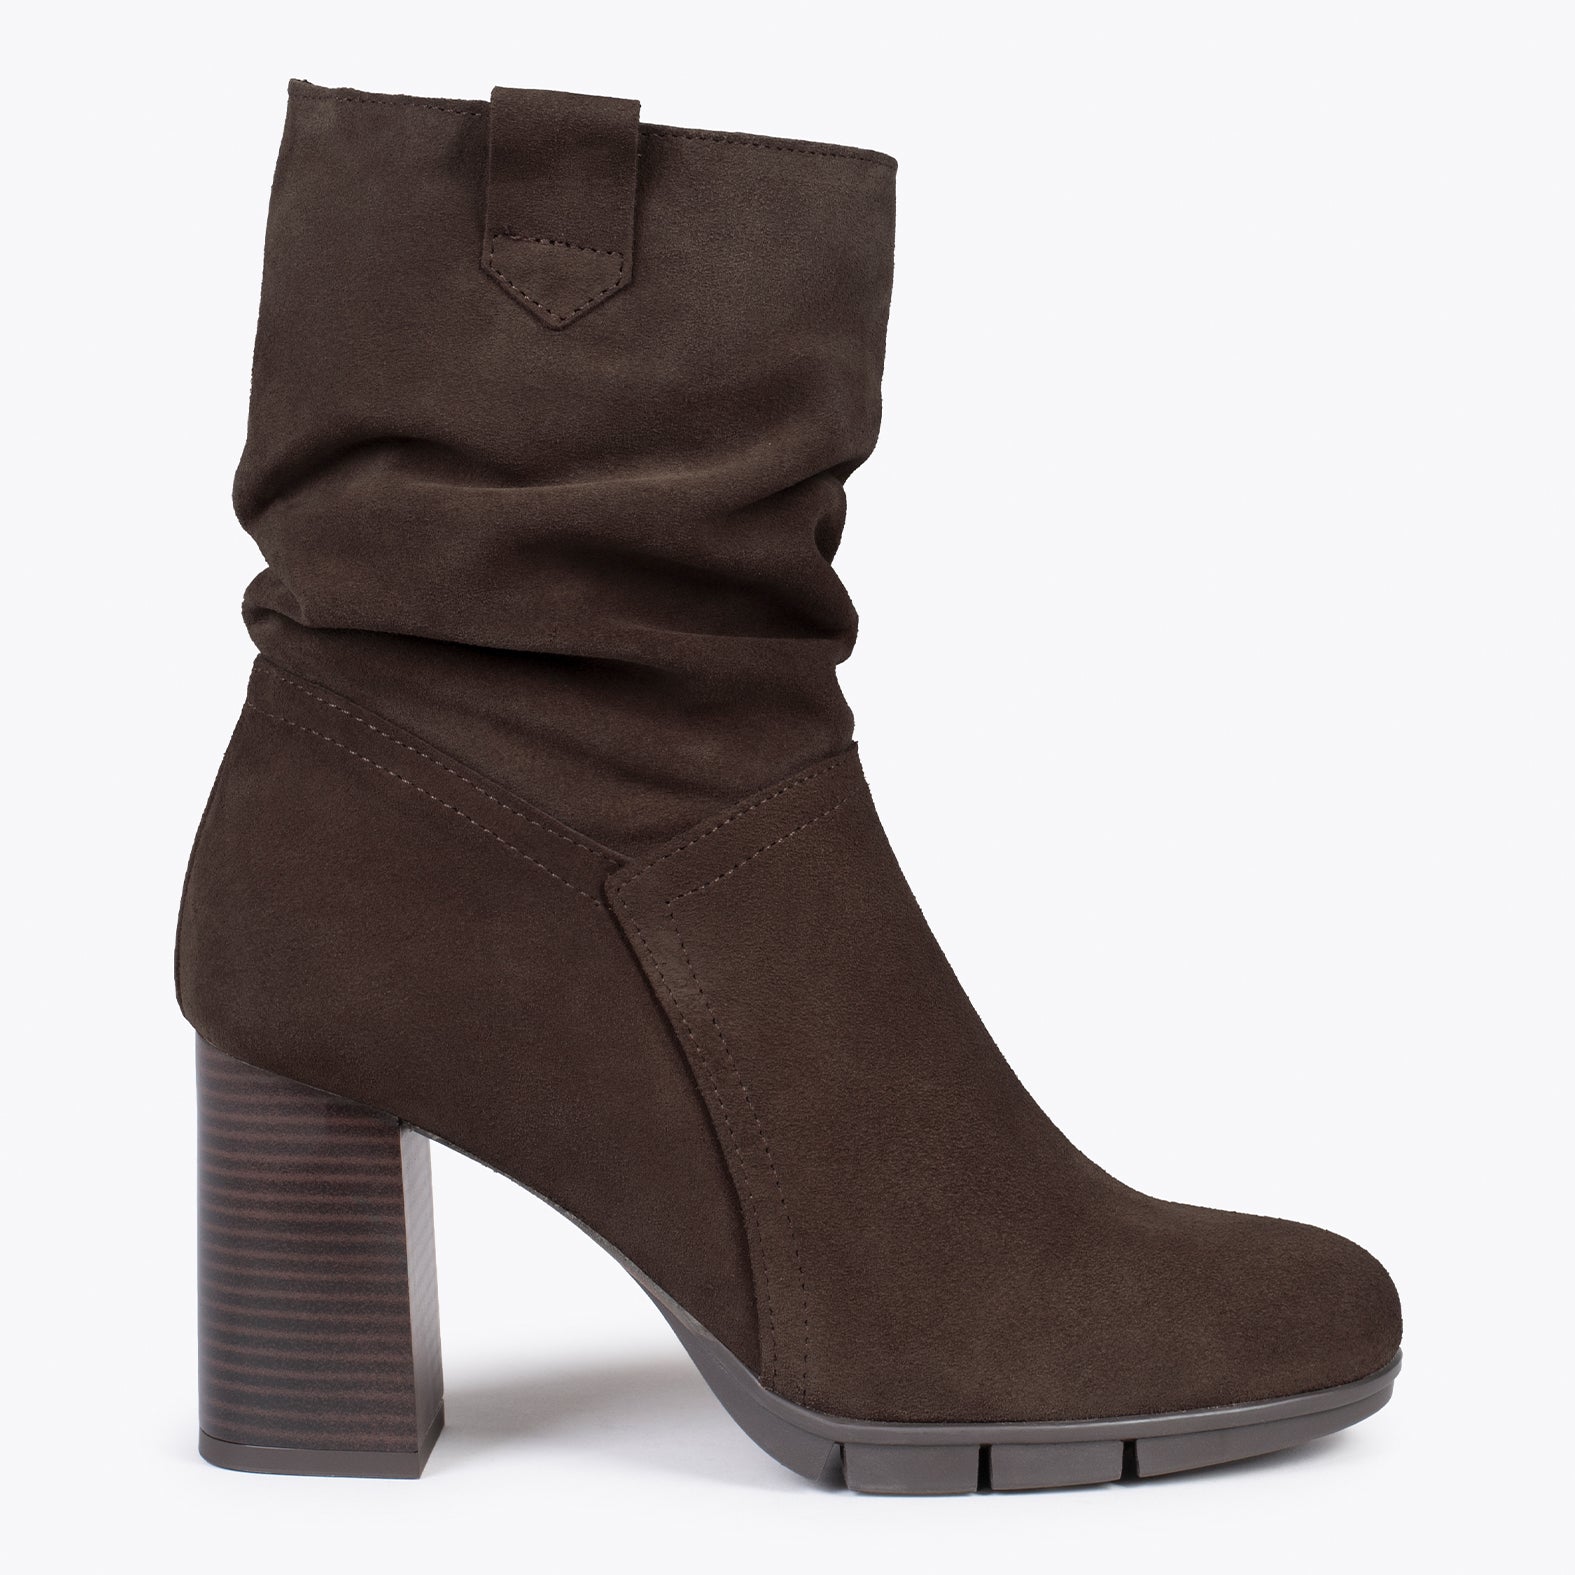 WAVE – BROWN high heel booties with zipper